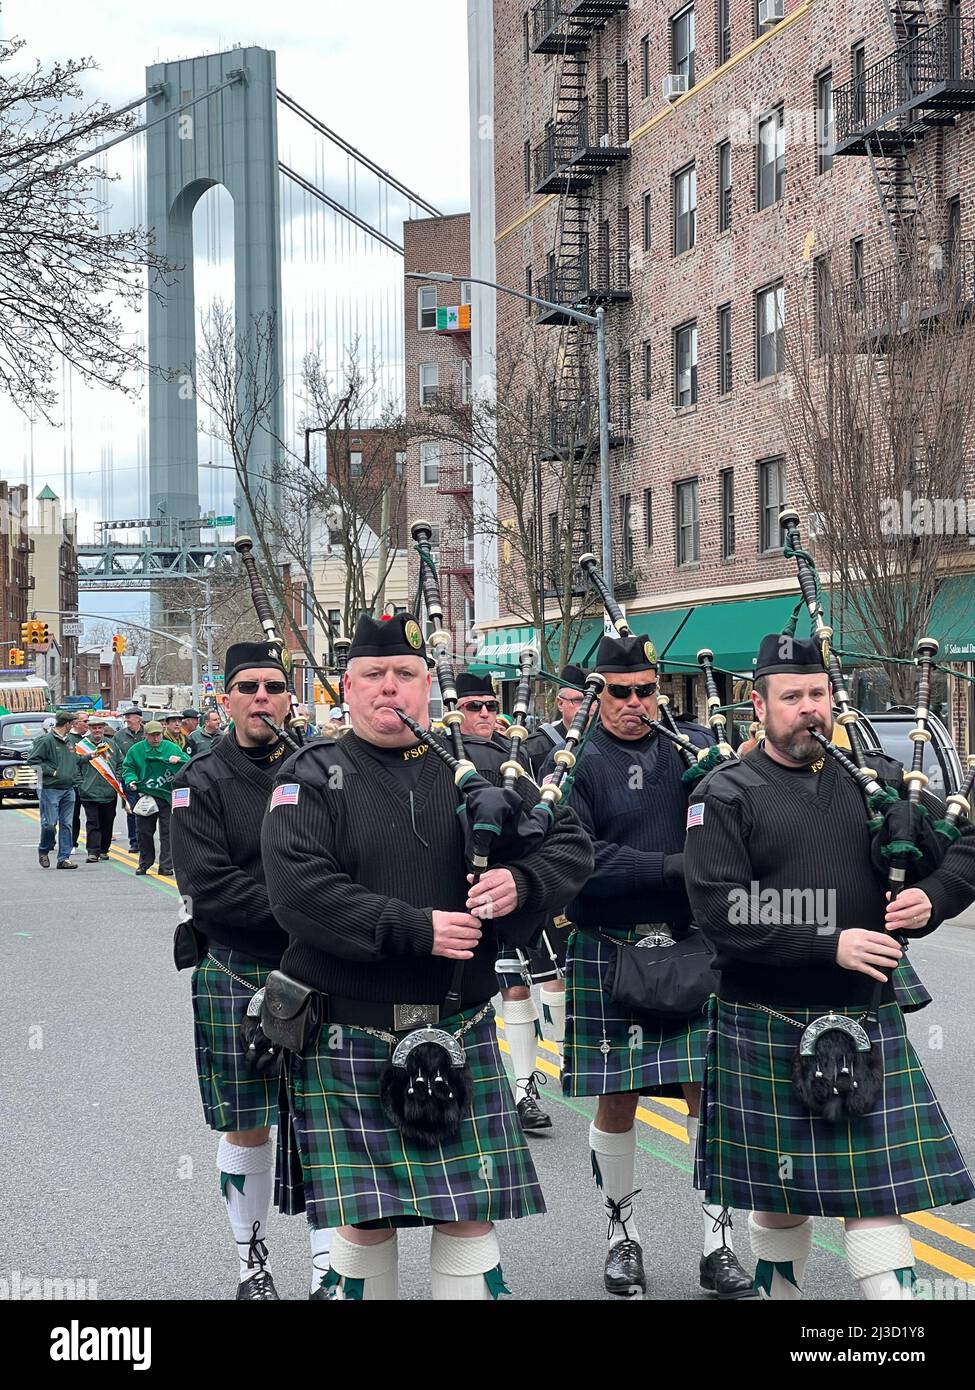 NYPD Emerald Society Pfeifen und Trommeln marschieren bei der Saint Patrick's Day Parade auf der 3. Avenue im Bay Ridge-Teil von Brooklyn, New York, mit einem Turm der Verrazano Bridge im Hintergrund. Stockfoto